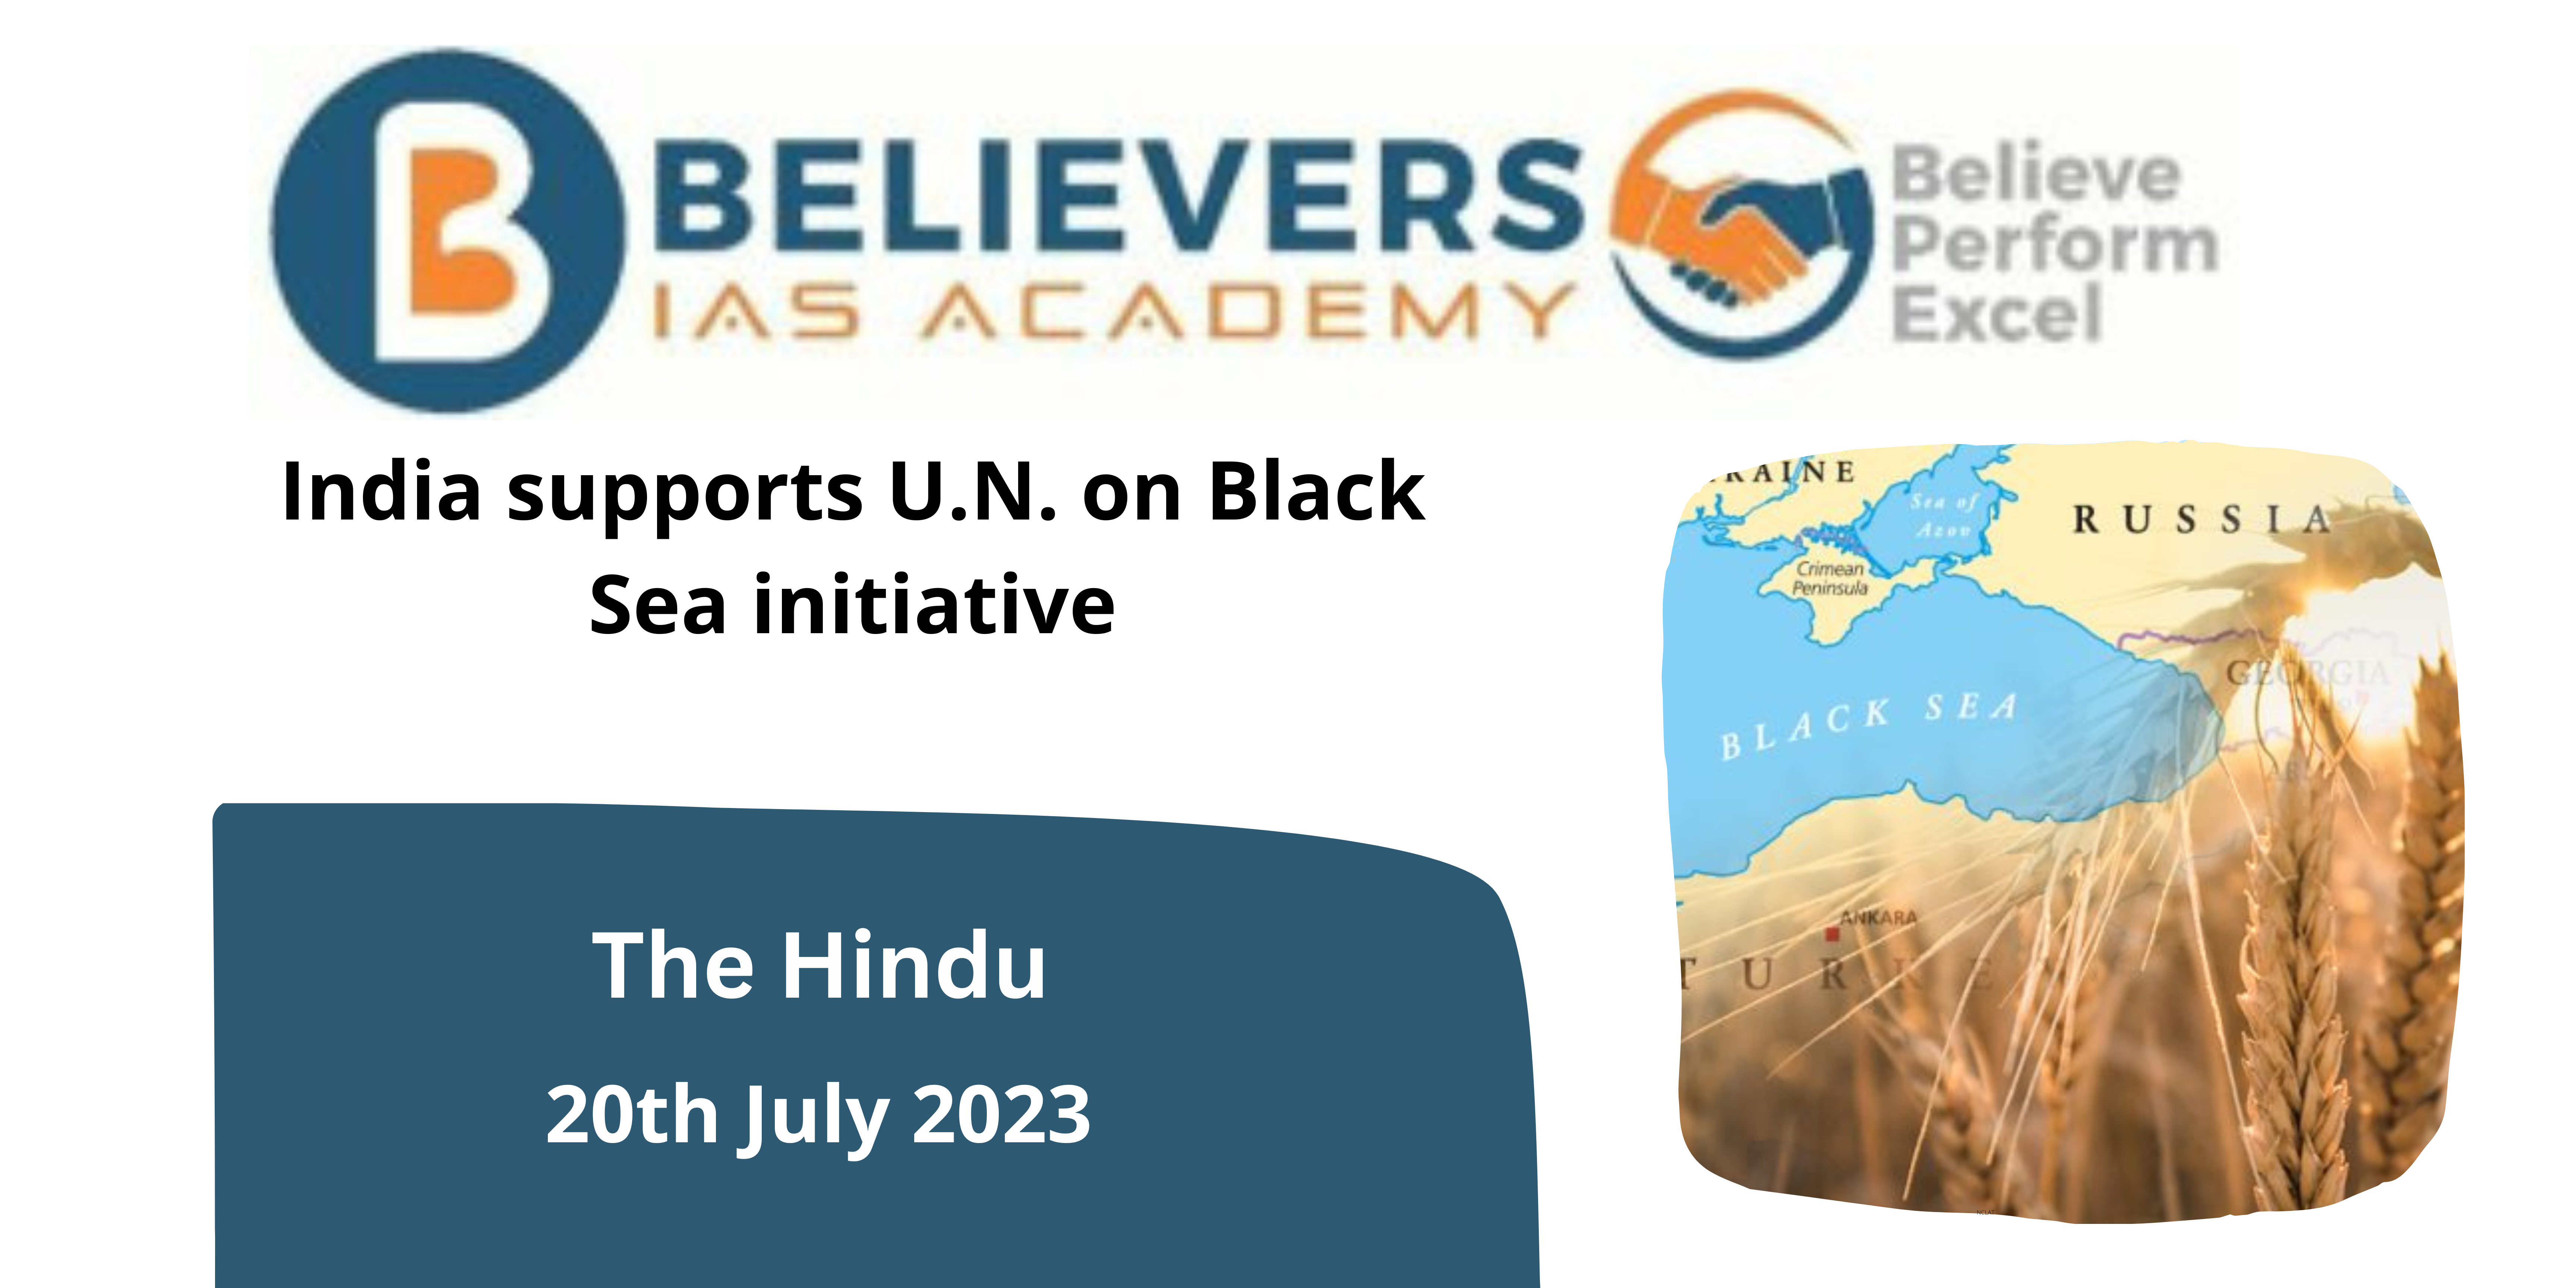 India supports U.N. on Black Sea initiative